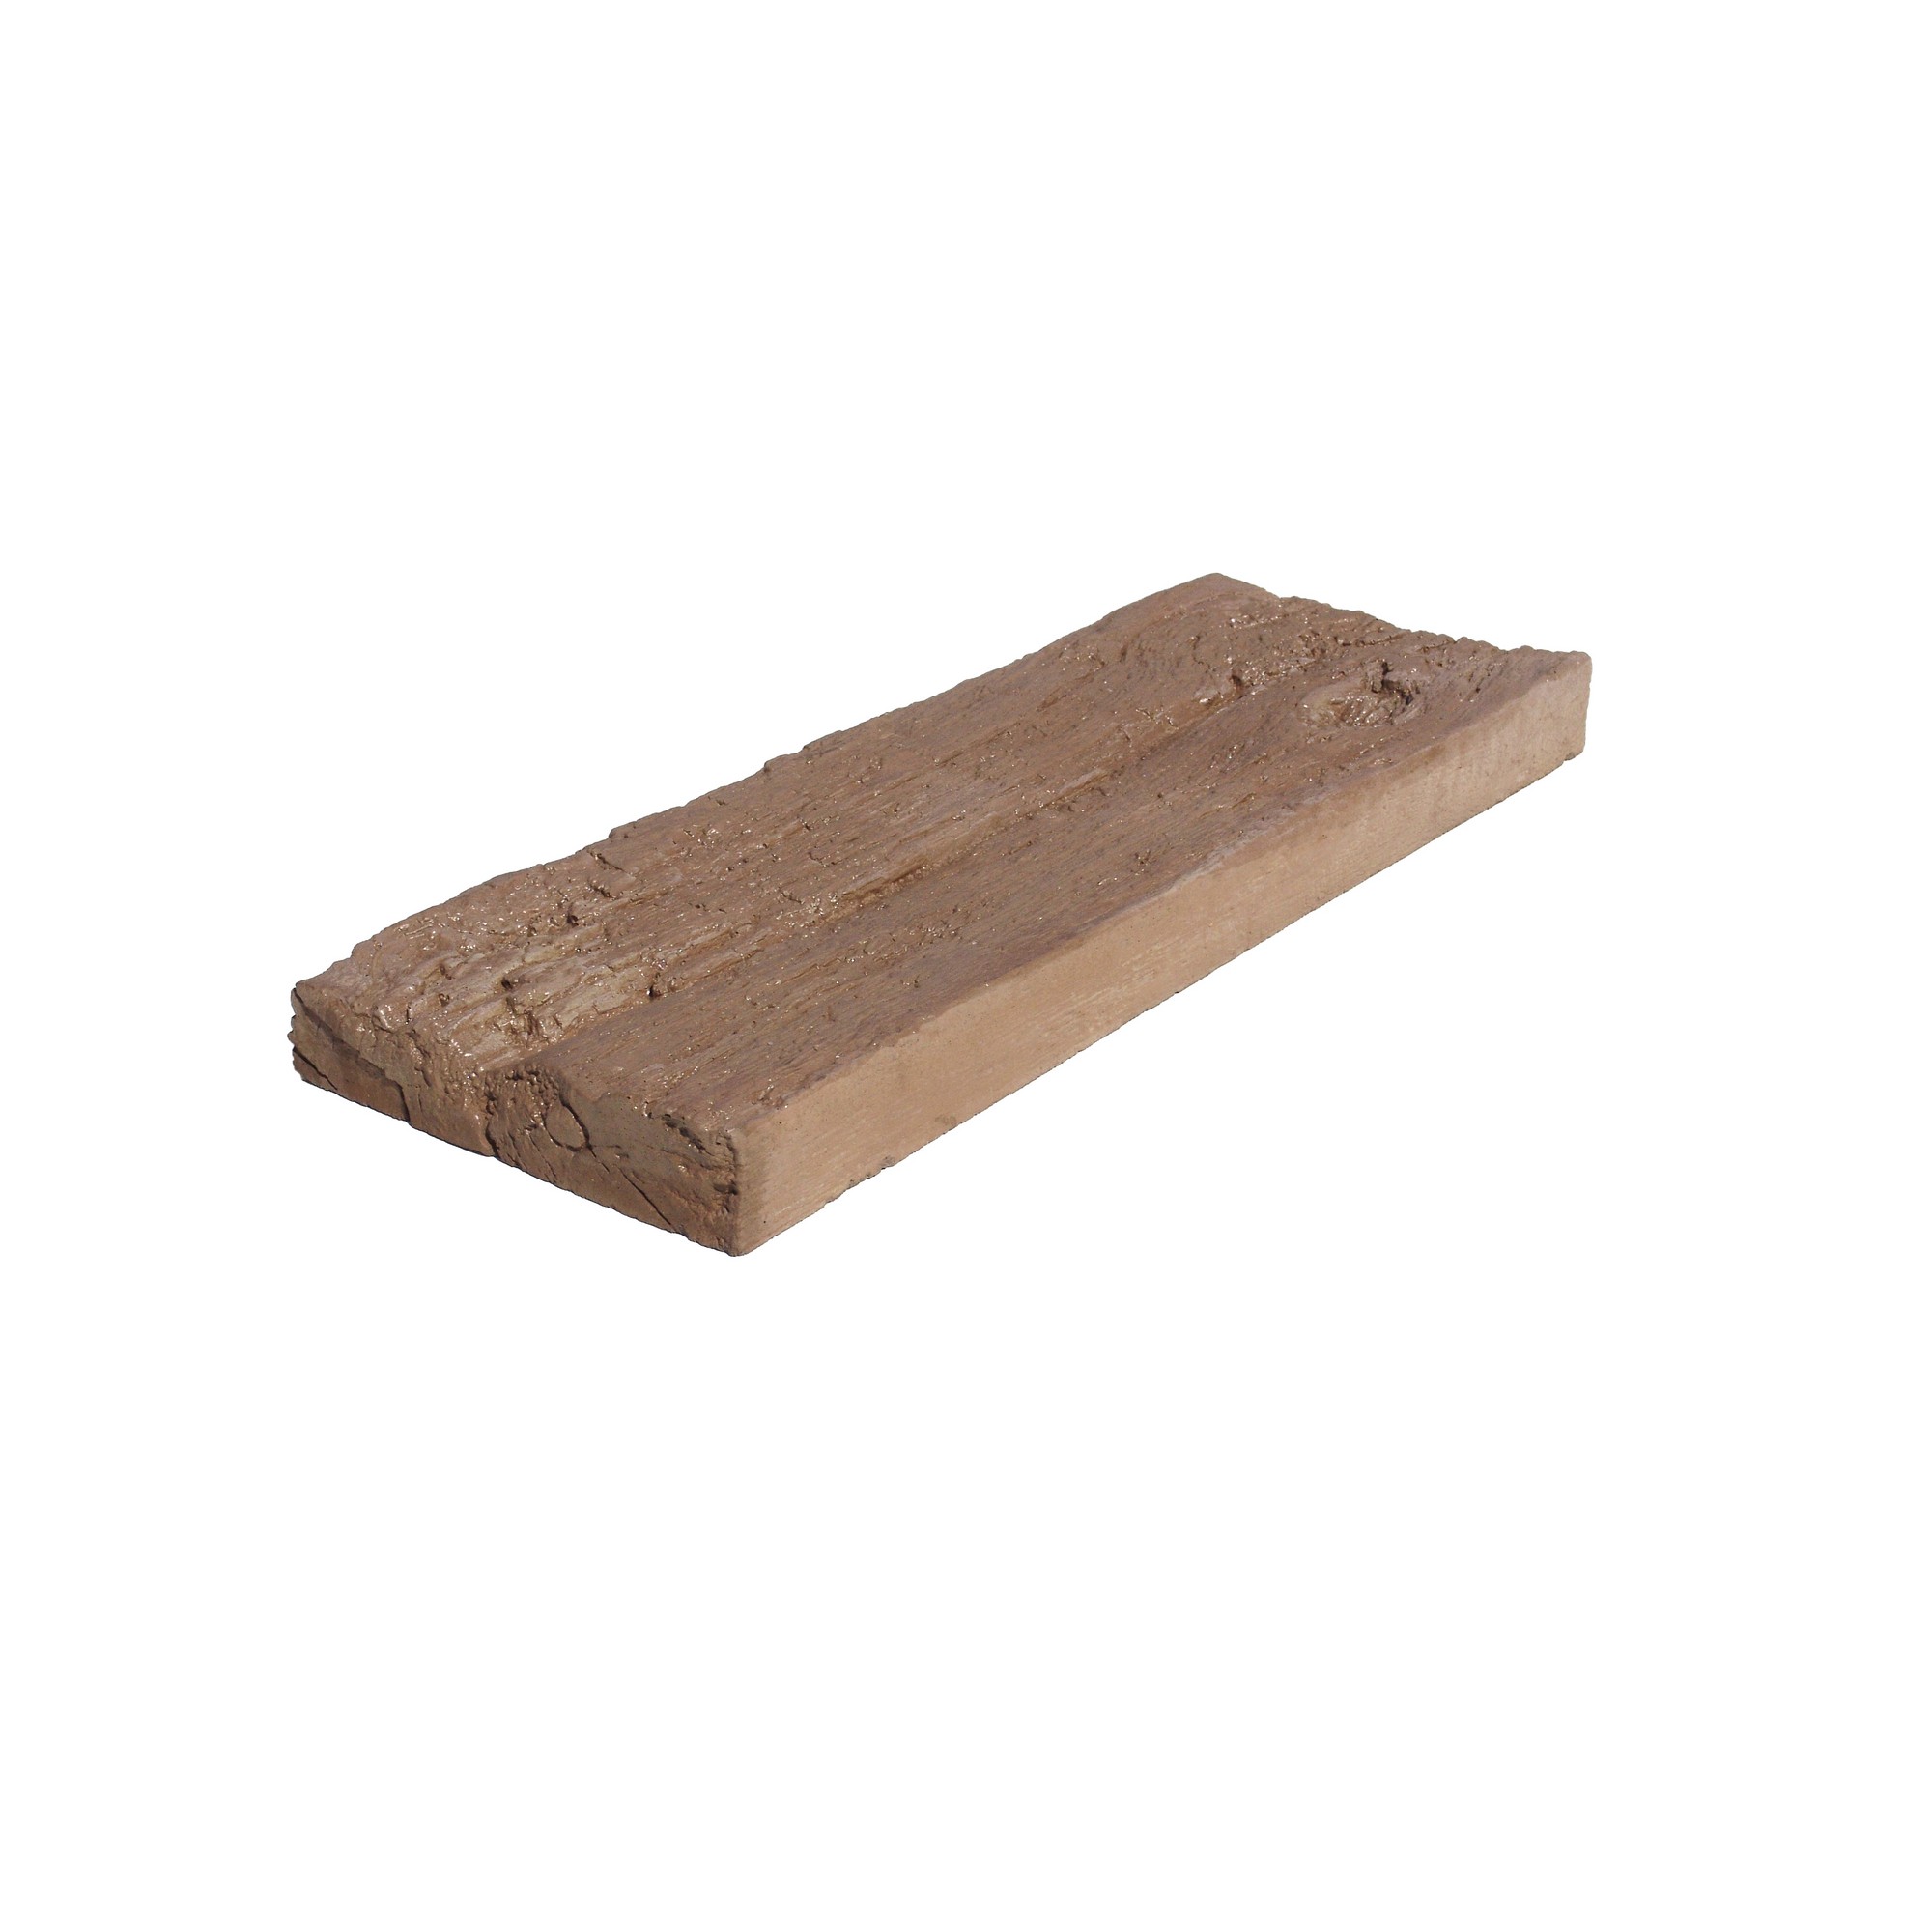 Dlažba betonová Presbeton BARK 1 reliéfní kůra hnědá 225×600×50 mm PRESBETON